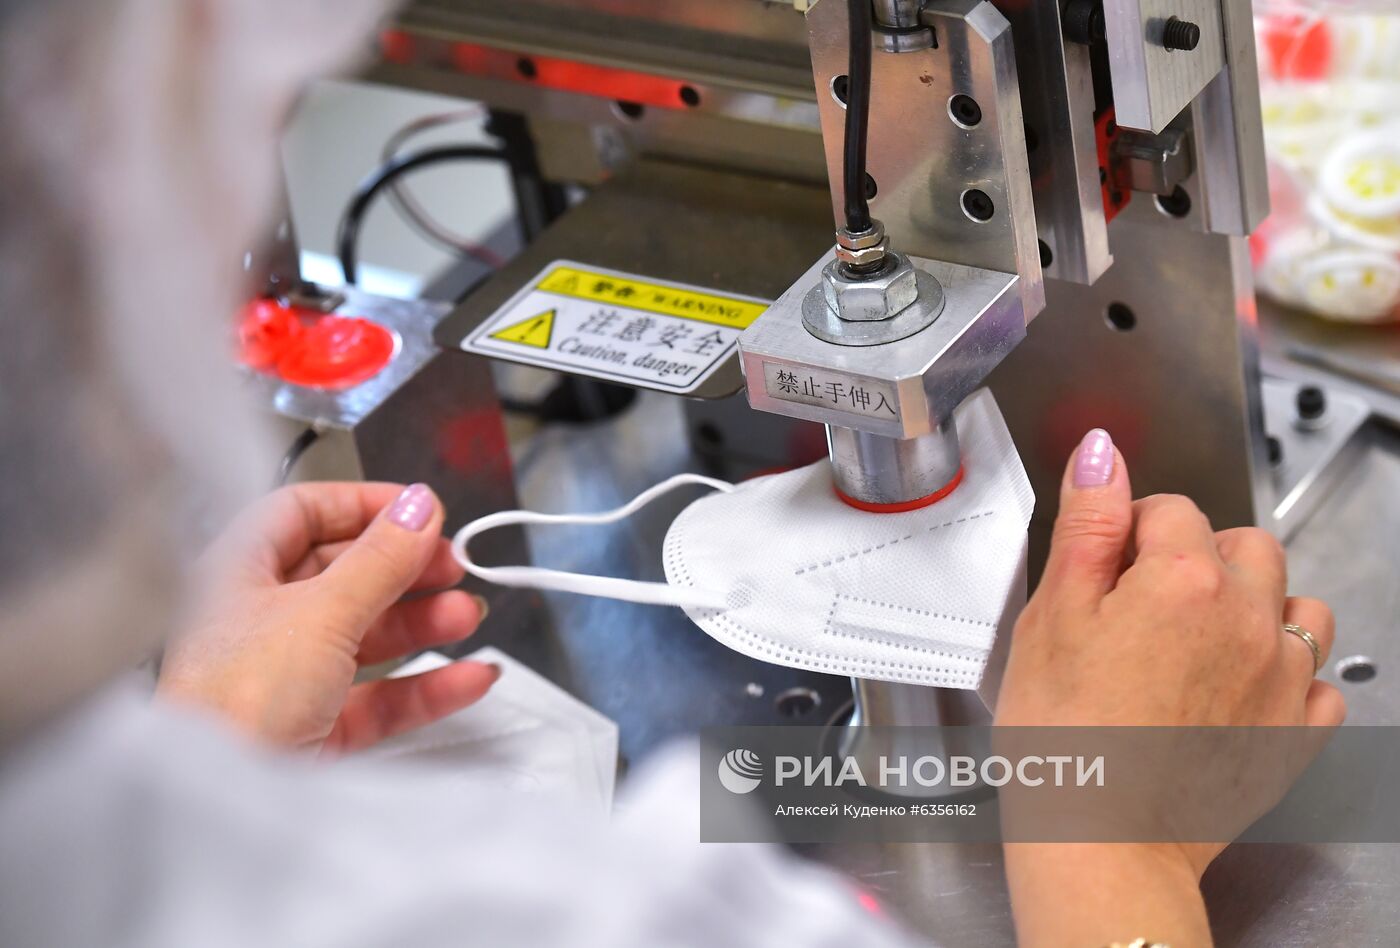 Производство медицинских масок в Московской области